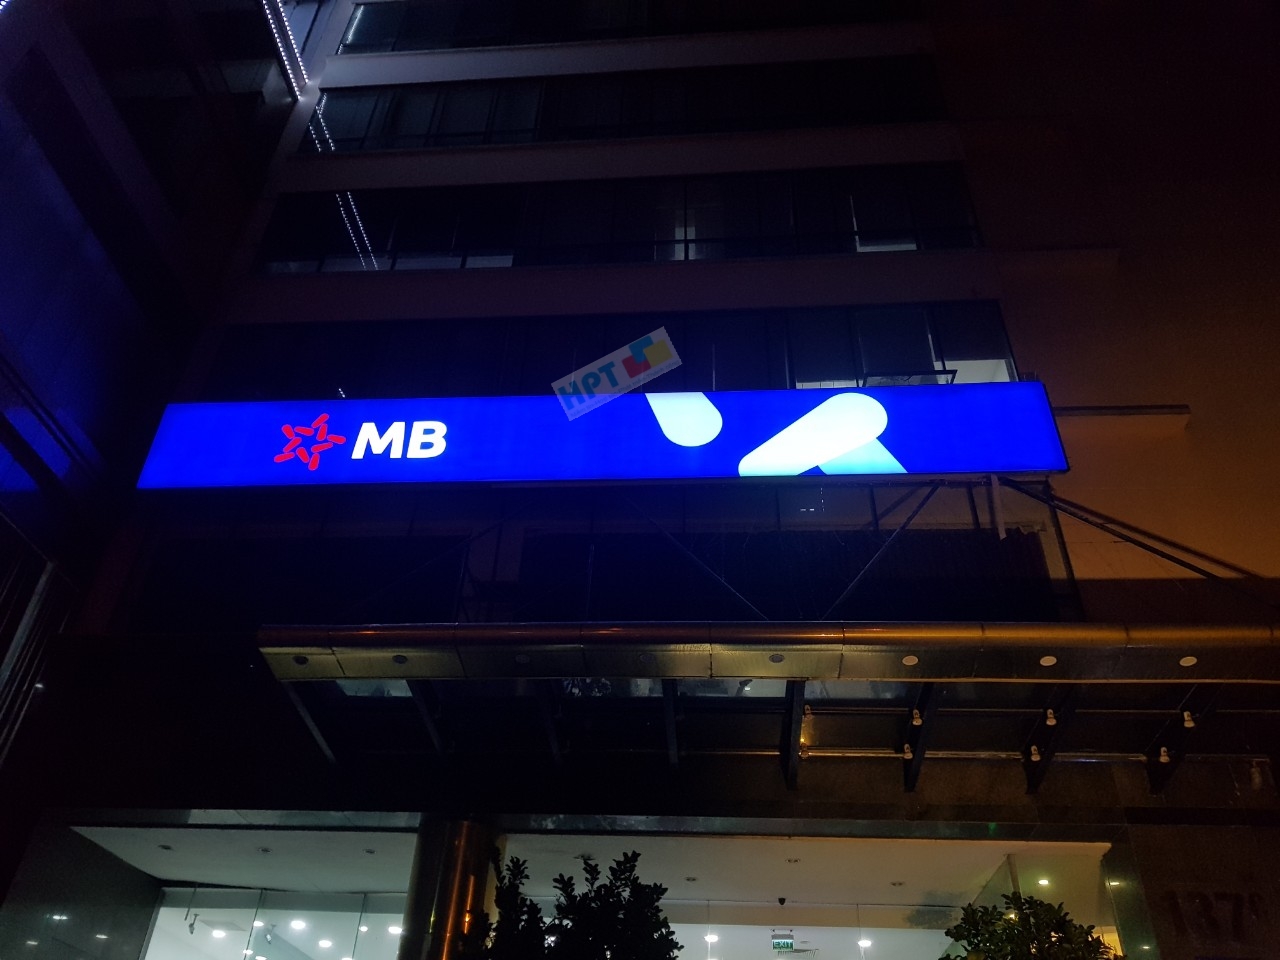 Lắp đặt màn hình led, Logo và bảng hiệu cho Mbbank